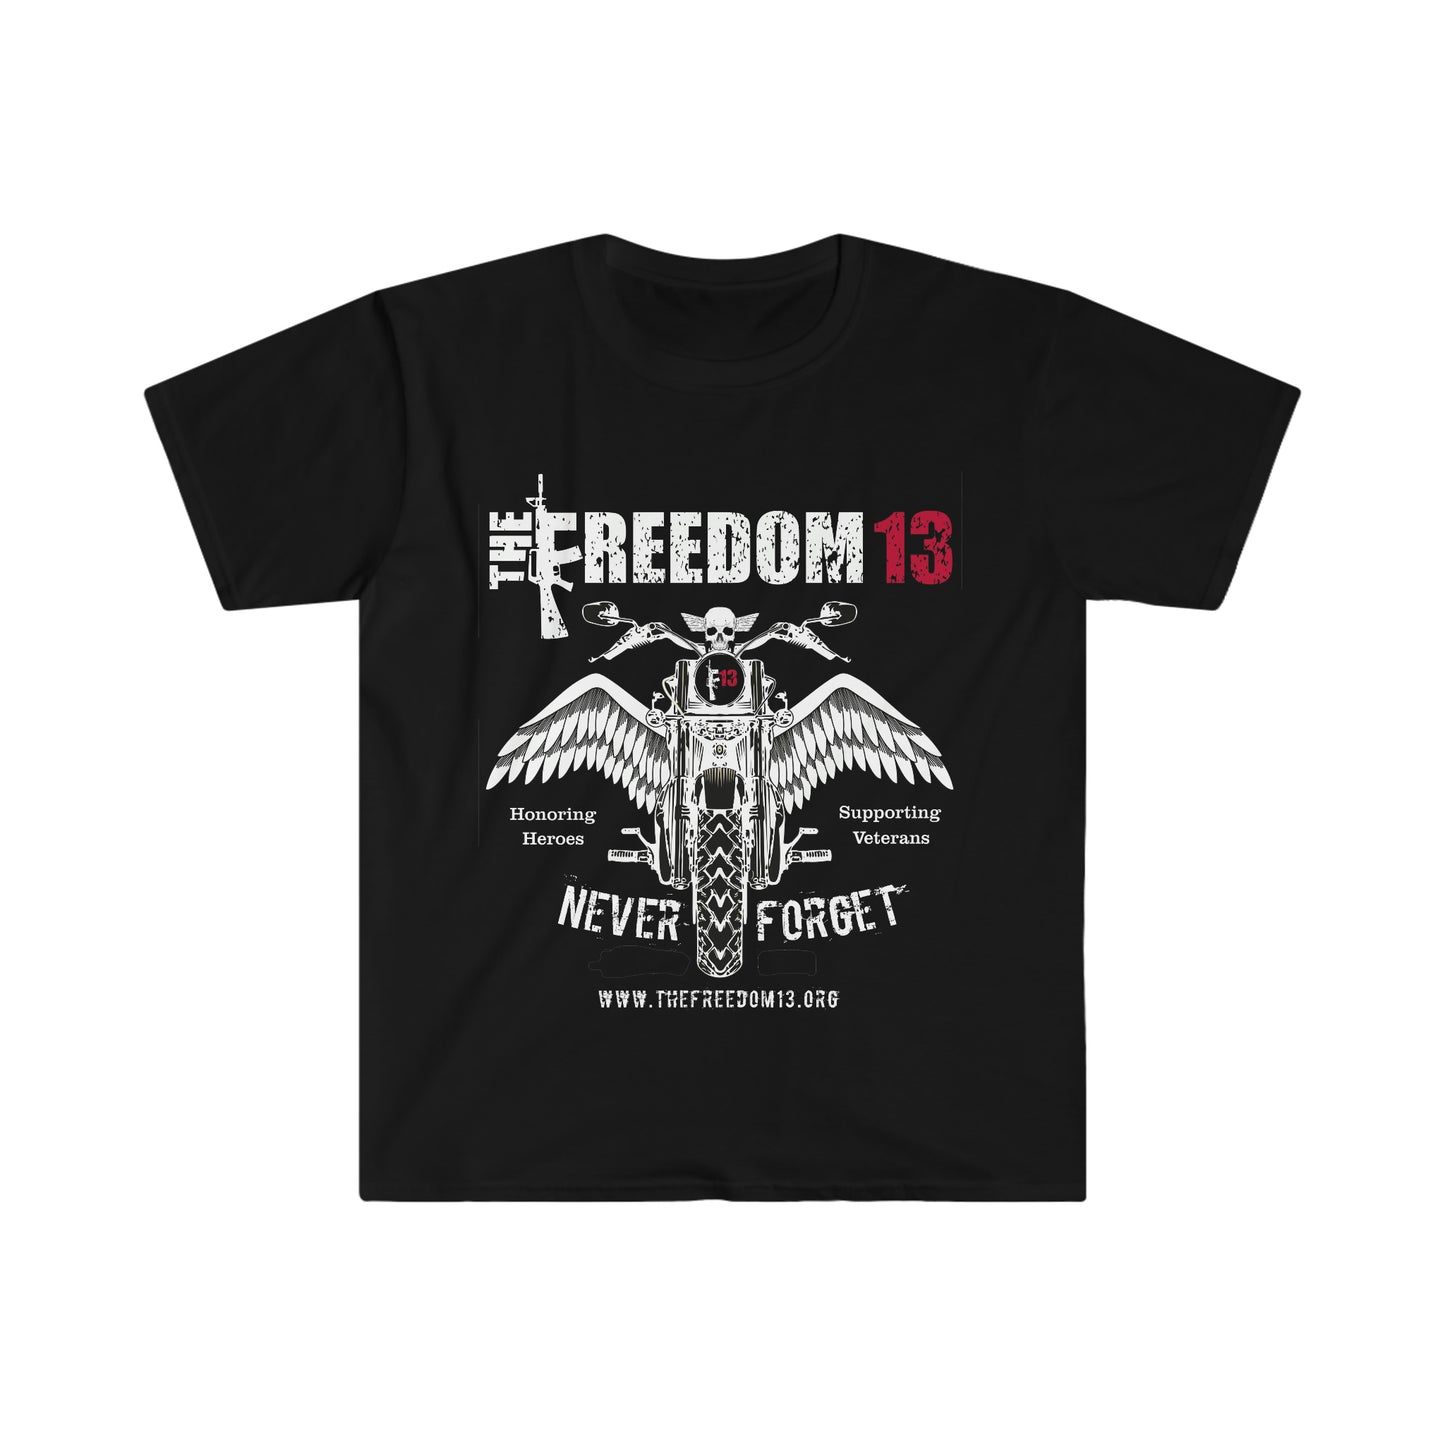 Unisex Softstyle T-Shirt Patriotic & Biker Collection "Angel Biker" dark